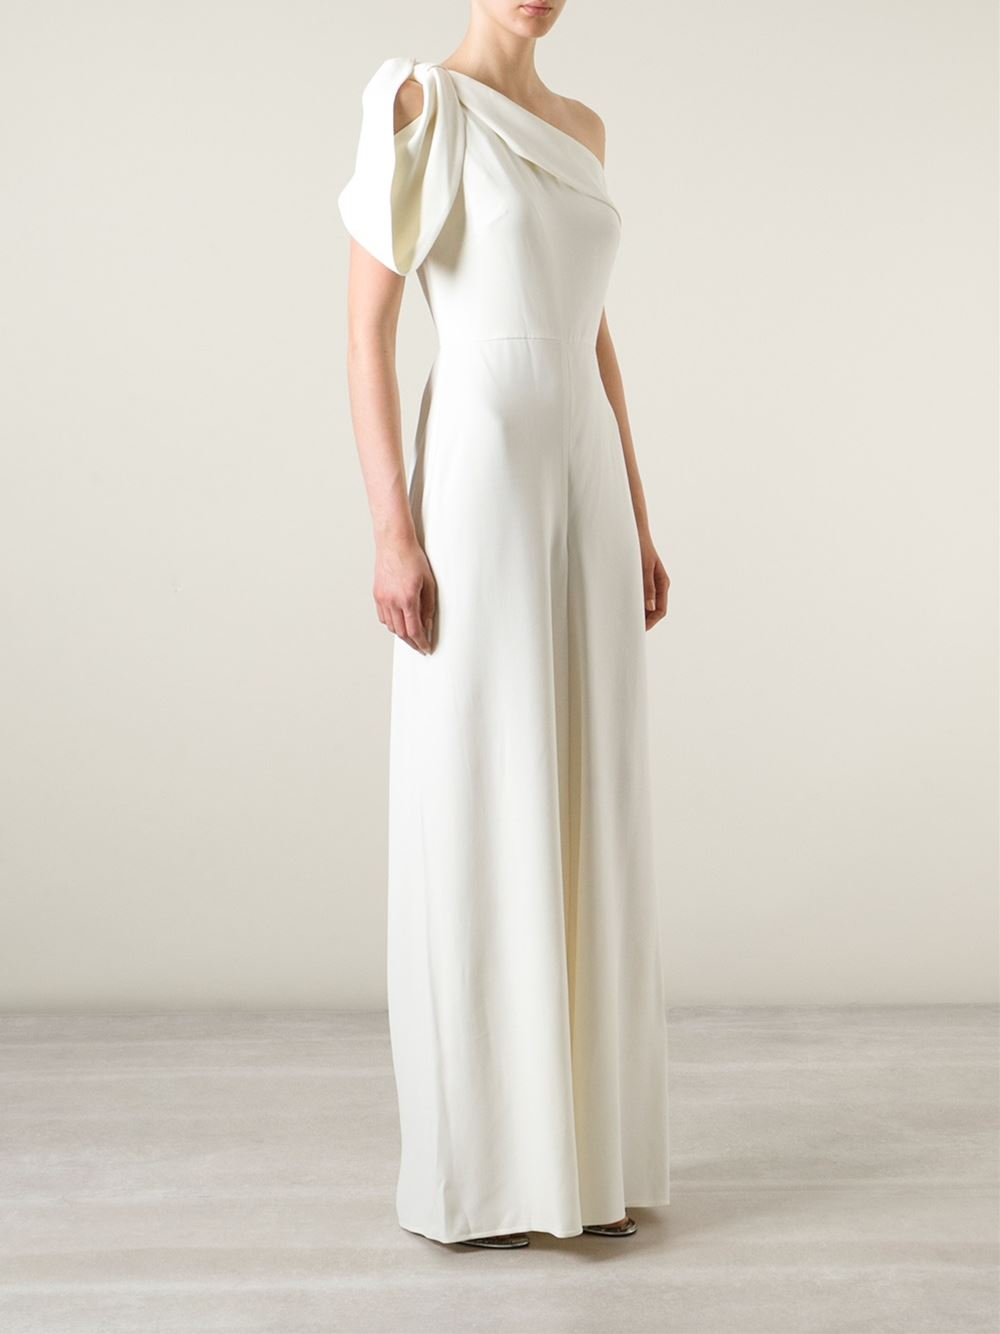 alexander mcqueen white evening gown